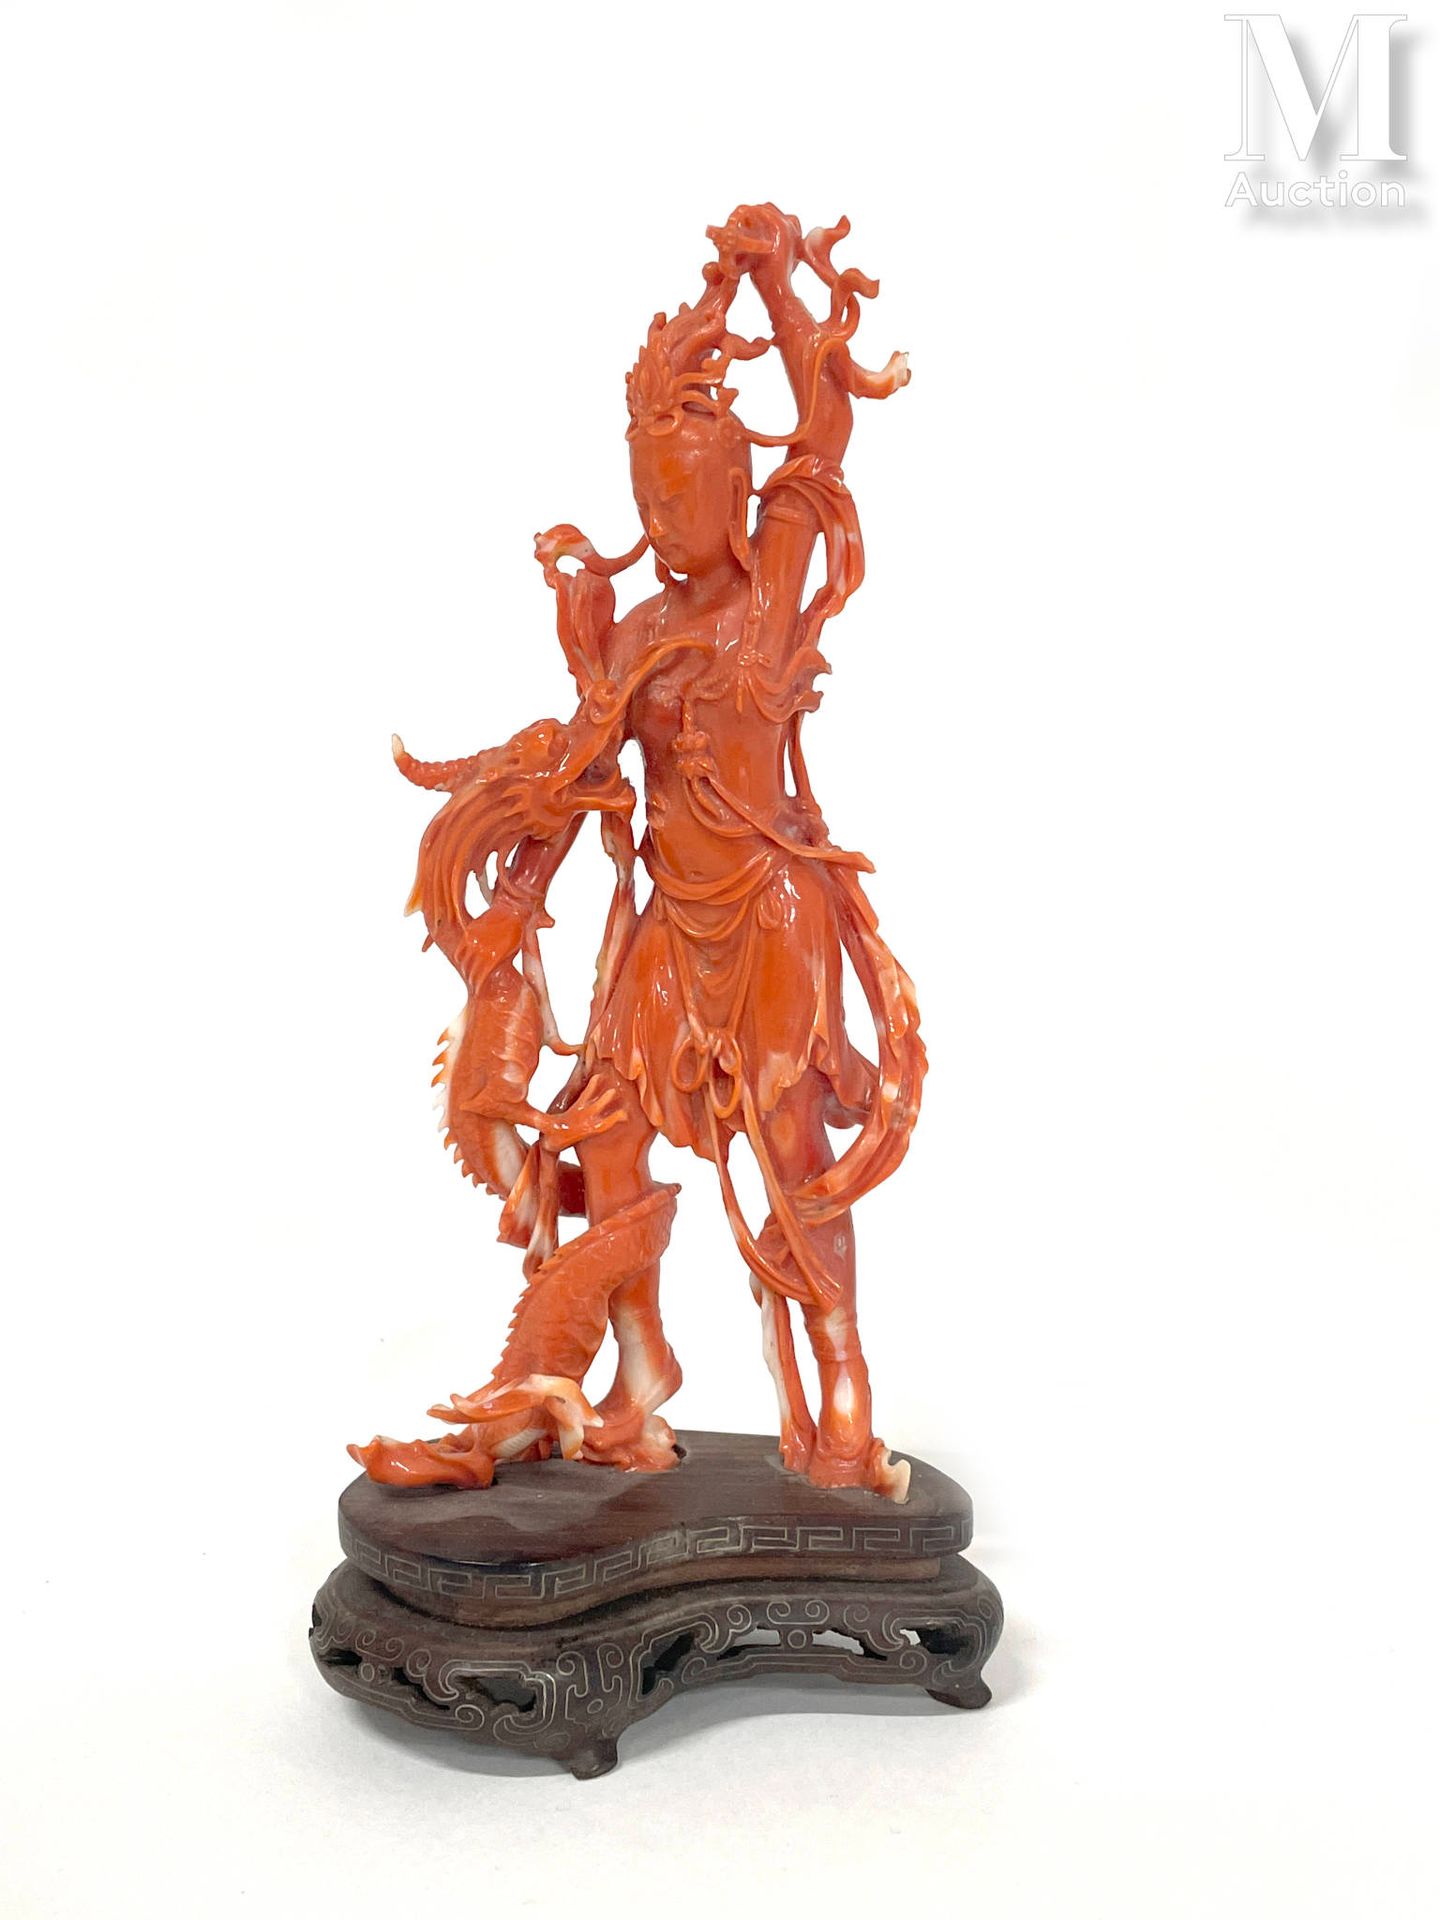 CHINE, XXe siècle Statuette en corail orange*

représentant une Guanyin debout, &hellip;